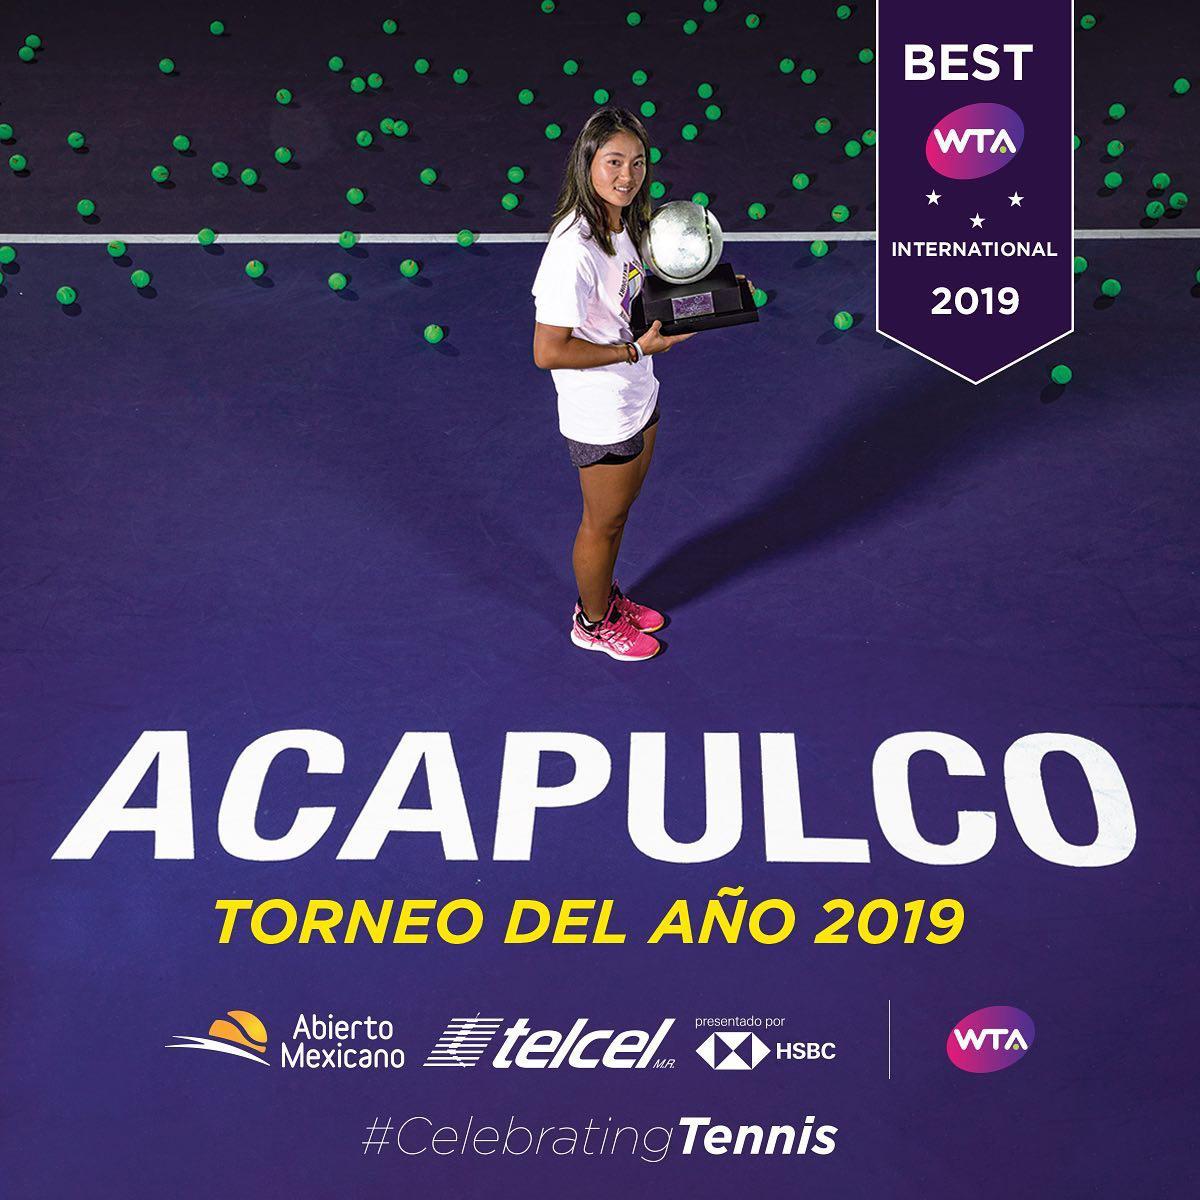 Abierto Mexicano de Tenis de Tenis, el mejor torneo internacional: WTA